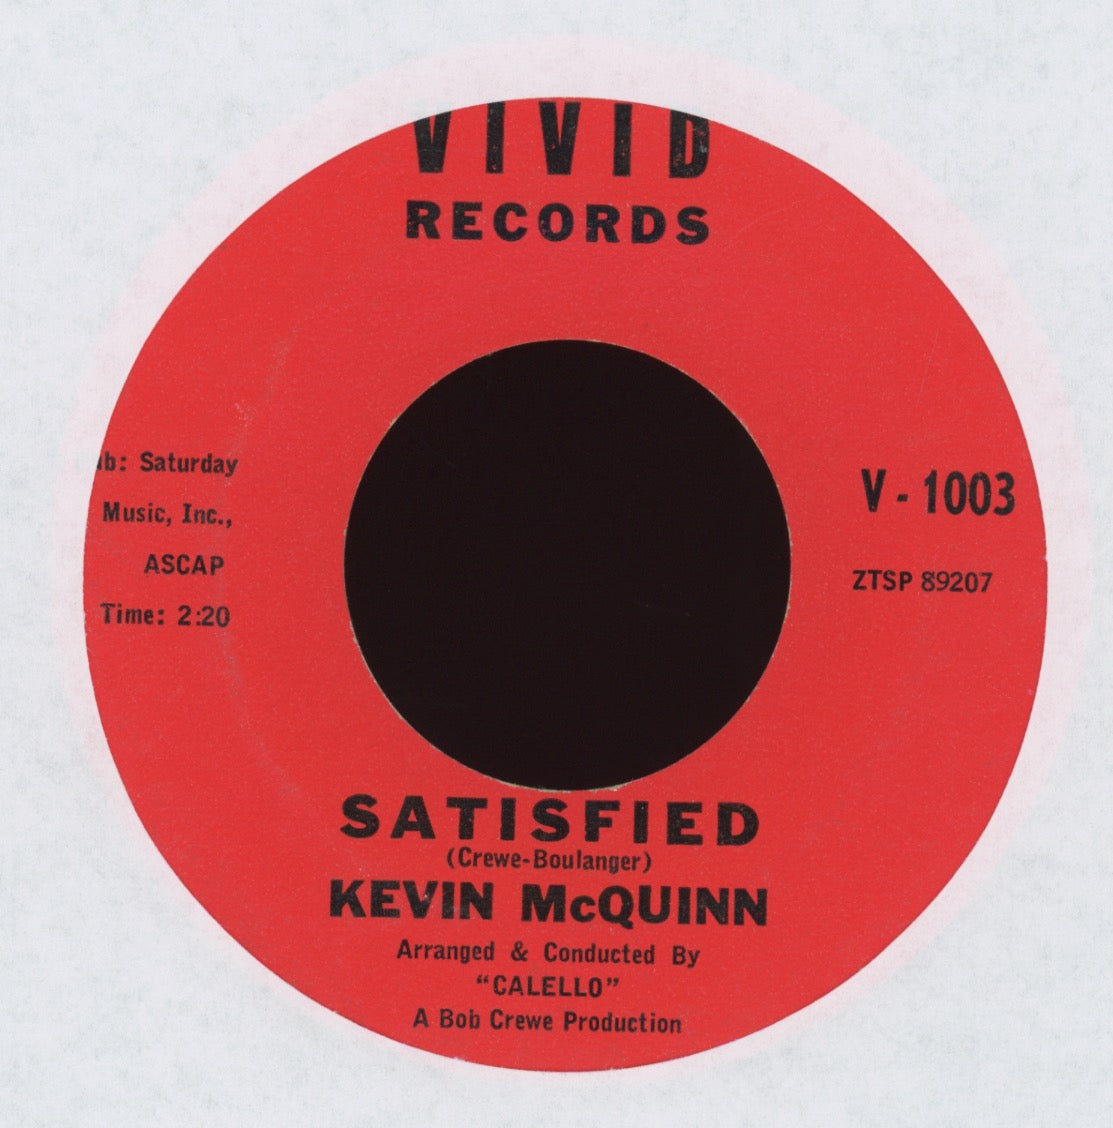 Kevin McQuinn - Satisfied on Vivid